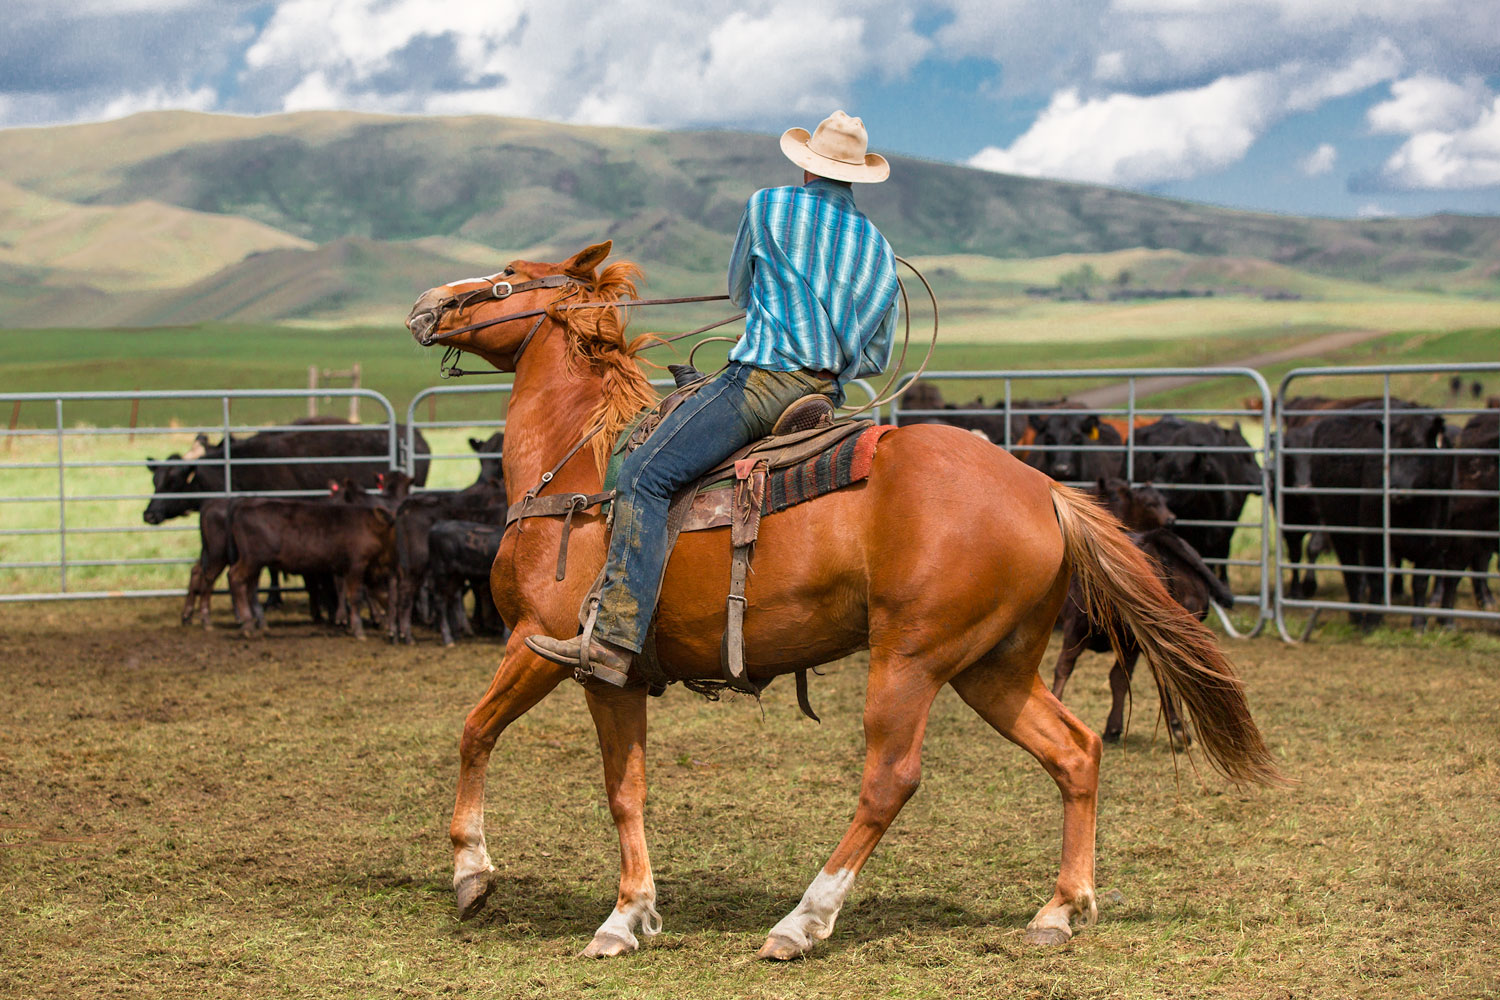 A cowboy makes a tight turn inside the corral near Lloyd, Montana.&nbsp;→ Buy a Print&nbsp;or License Photo